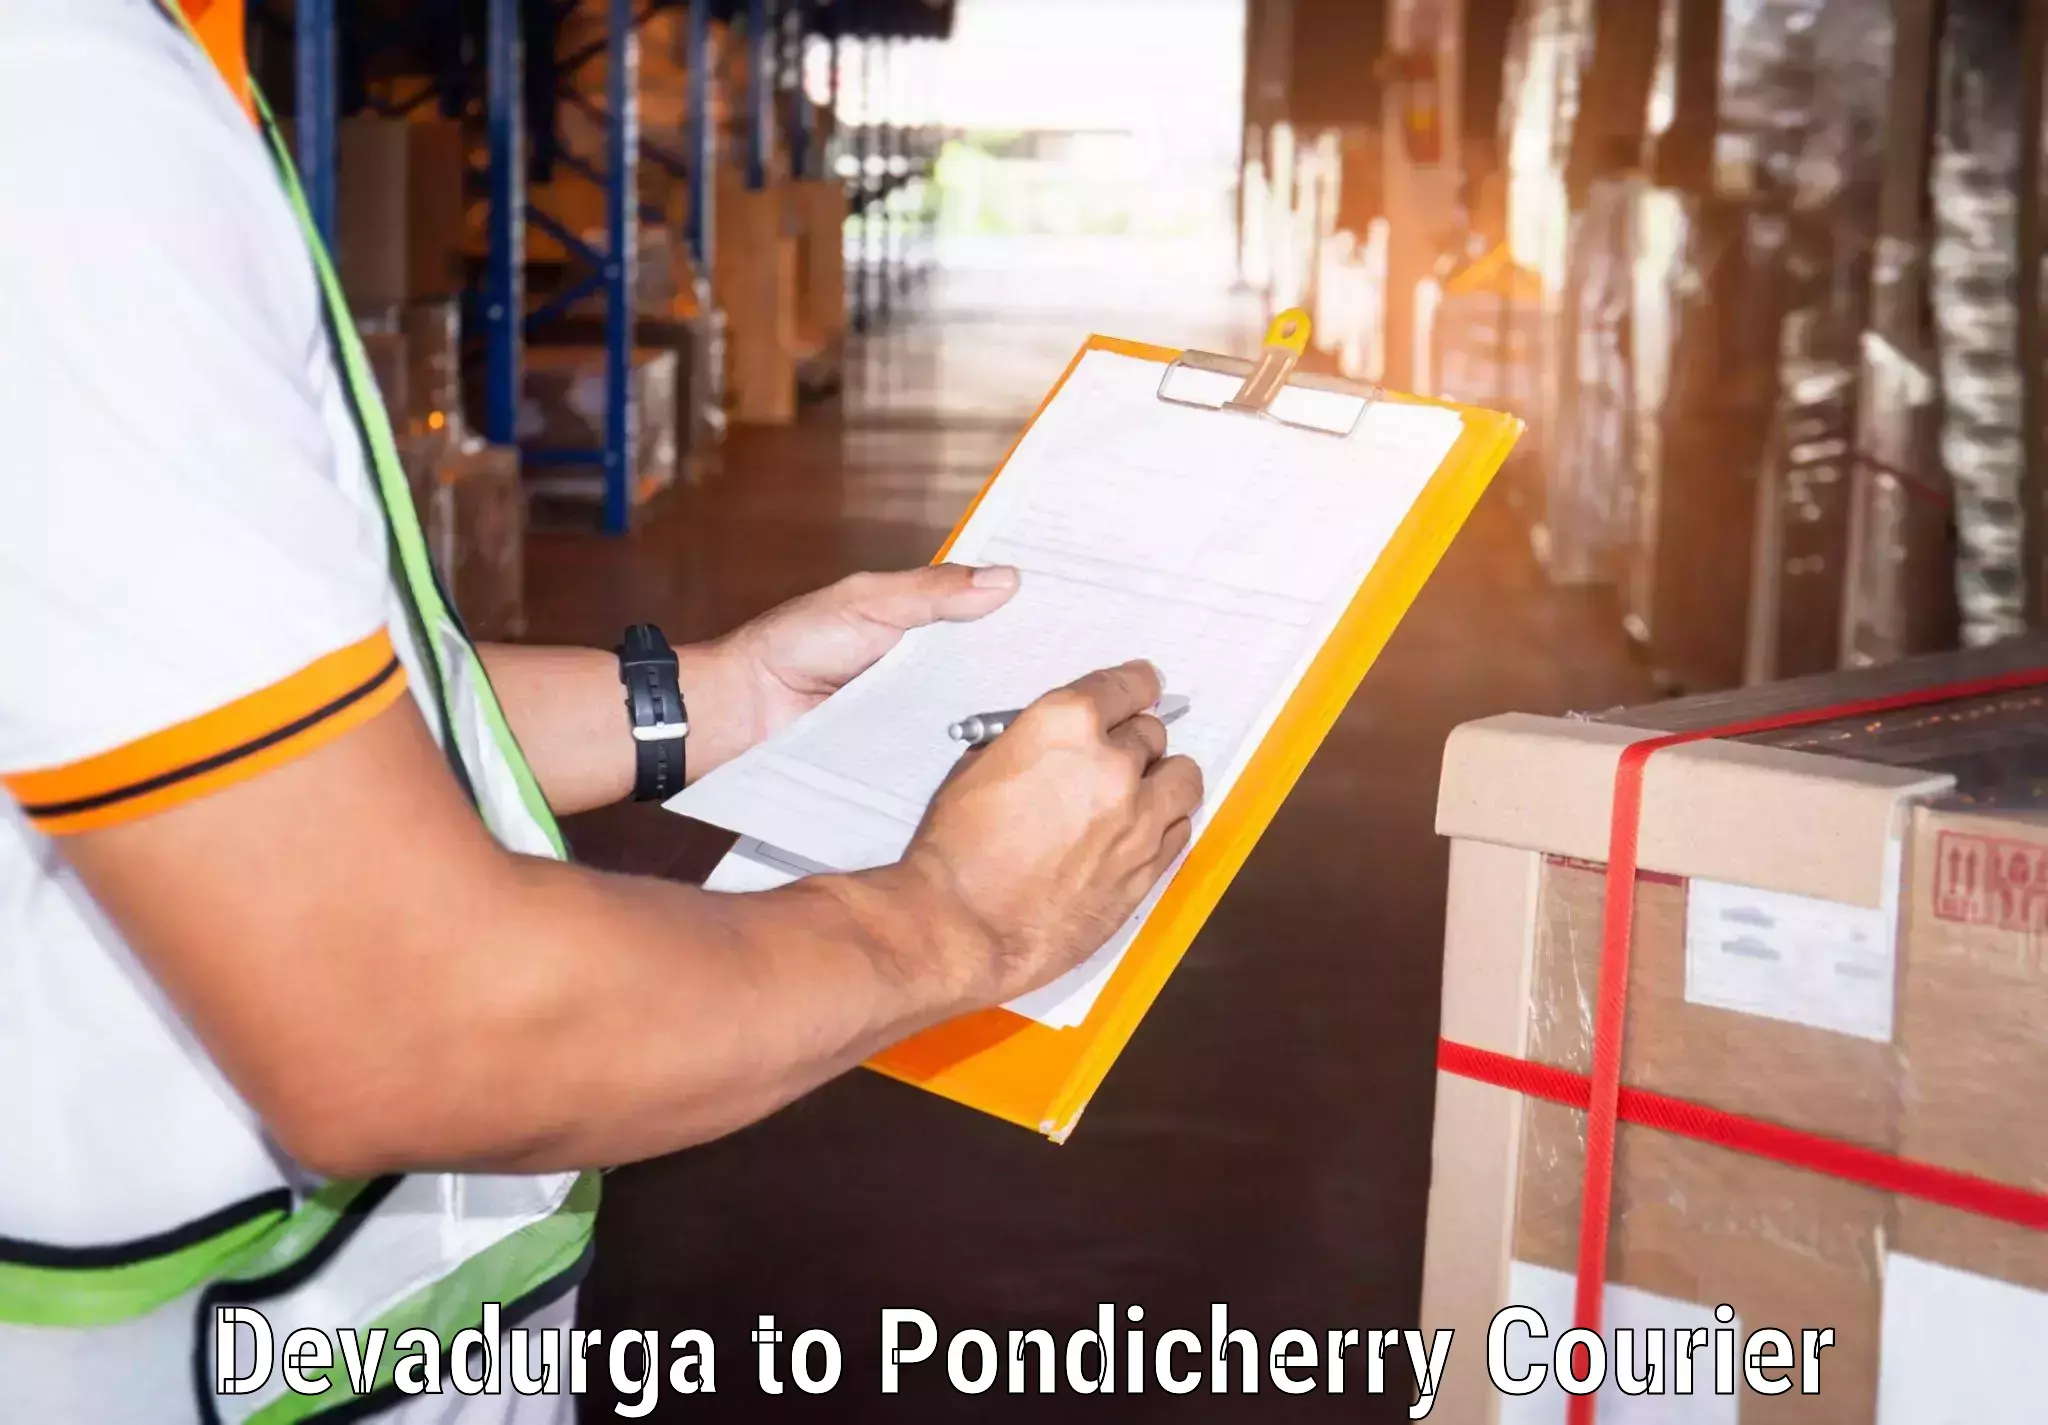 Pharmaceutical courier Devadurga to Pondicherry University